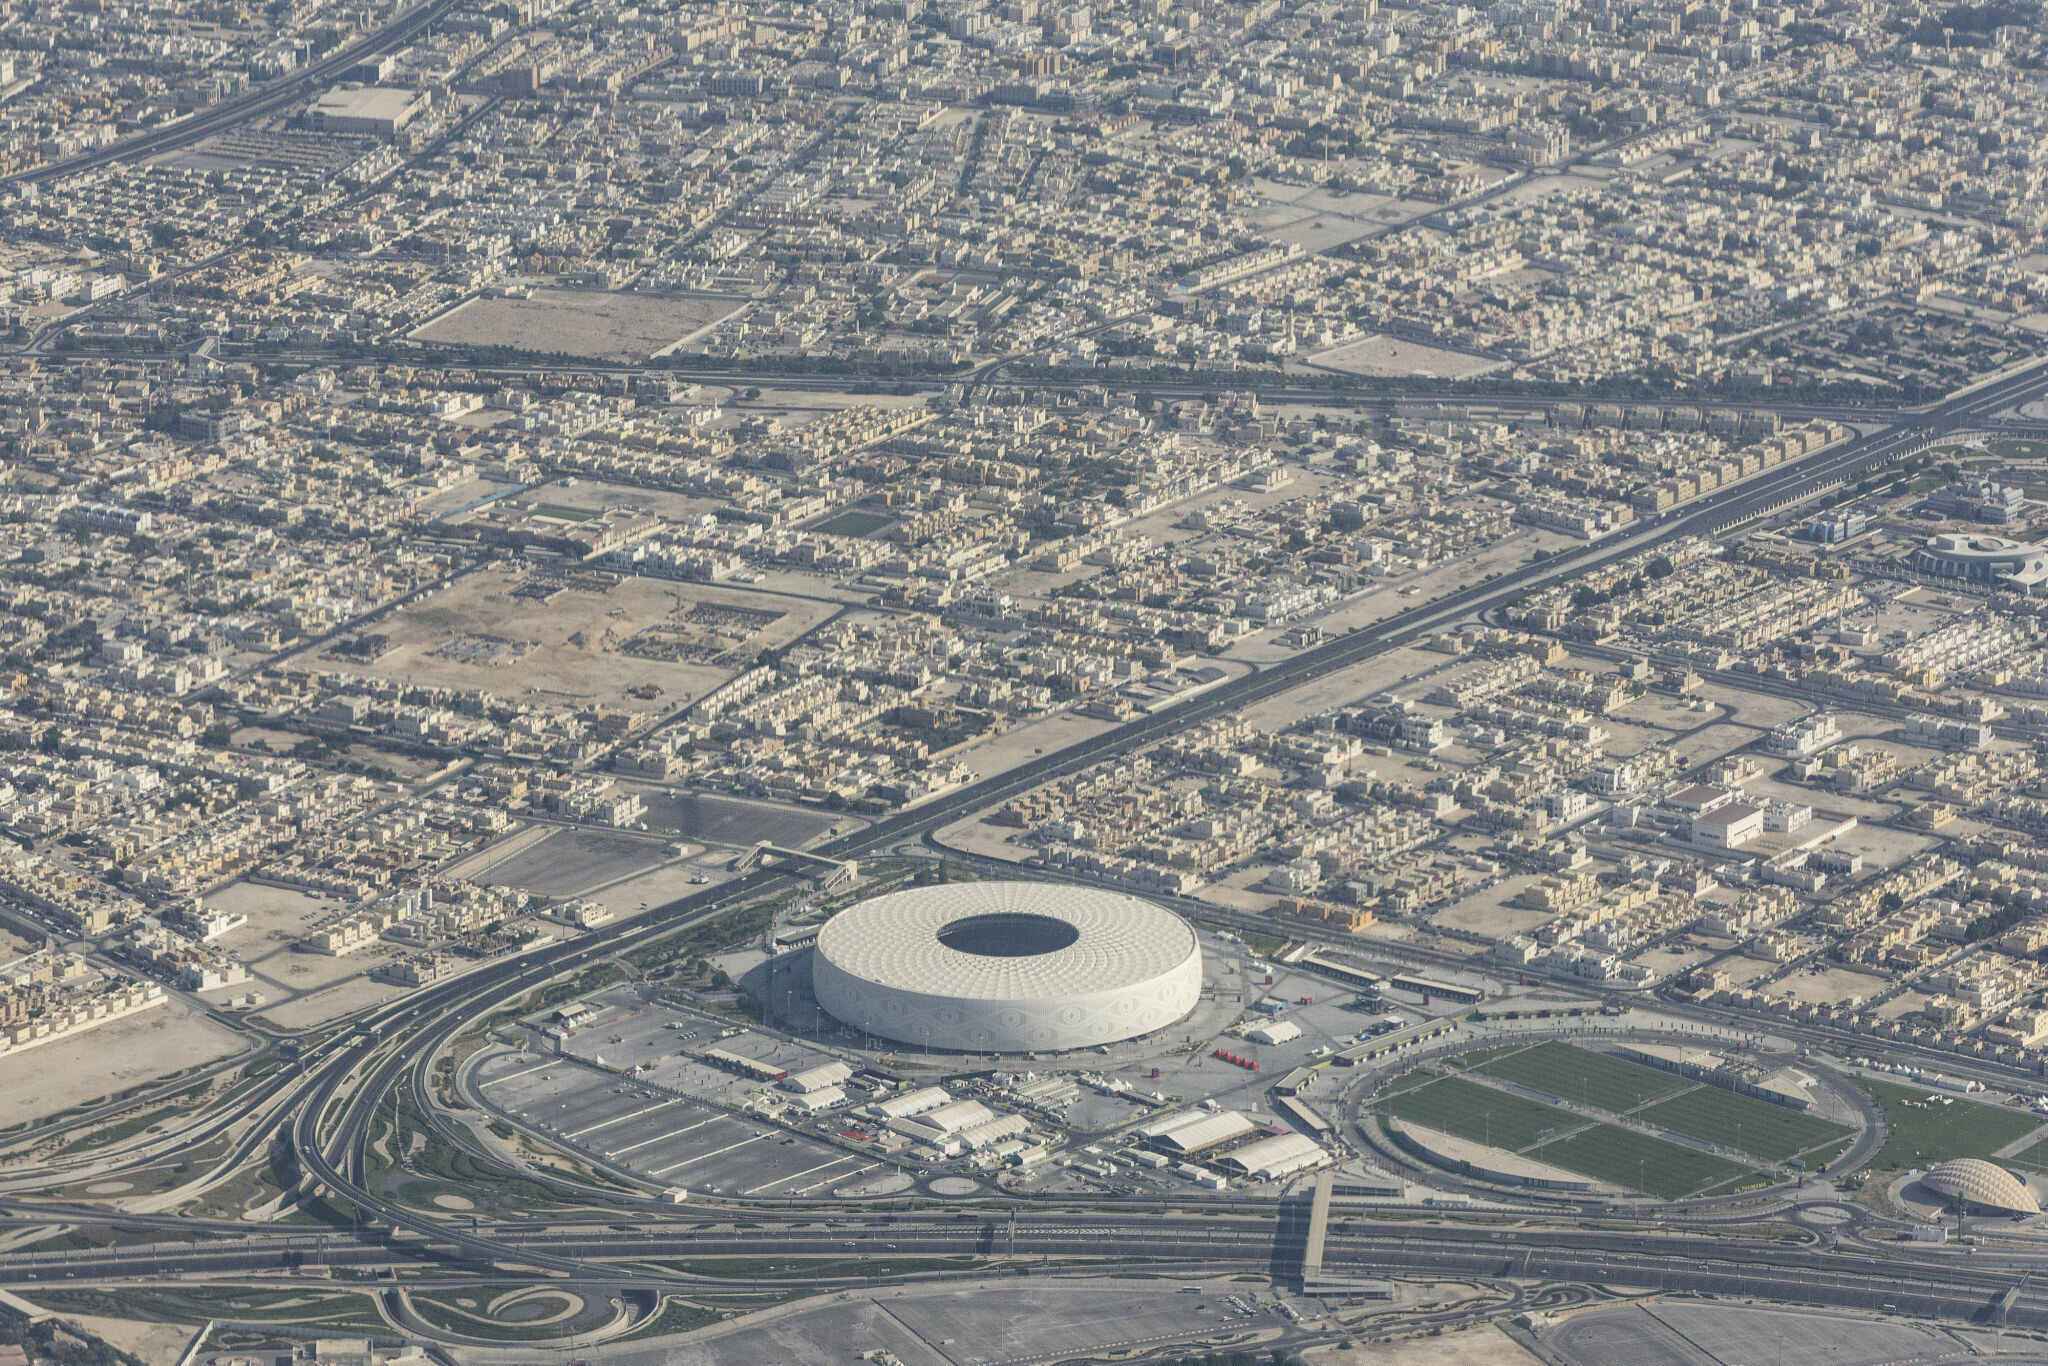 Sân Al Thumama nằm cách trung tâm thành phố Doha 13km, thường được dùng làm sân nhà của đội tuyển quốc gia Qatar. Xung quanh sân là tổ hợp thể thao hiện đại. (Ảnh: Getty)